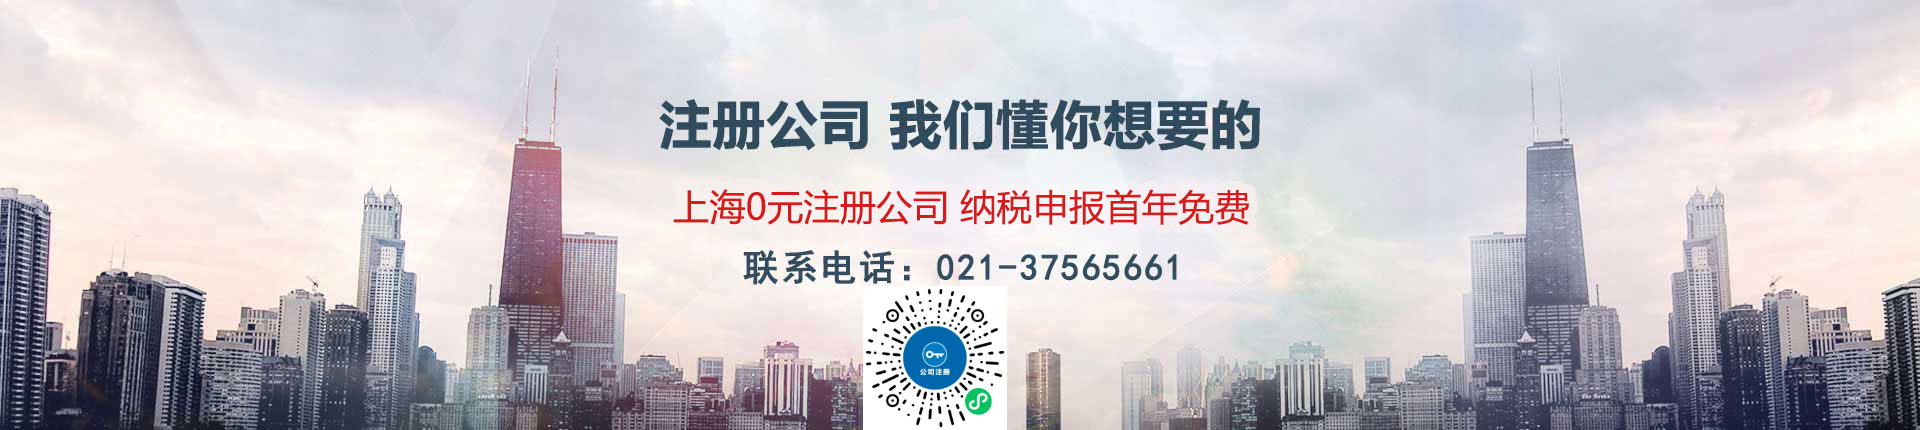 上海注册公司代办微信小程序